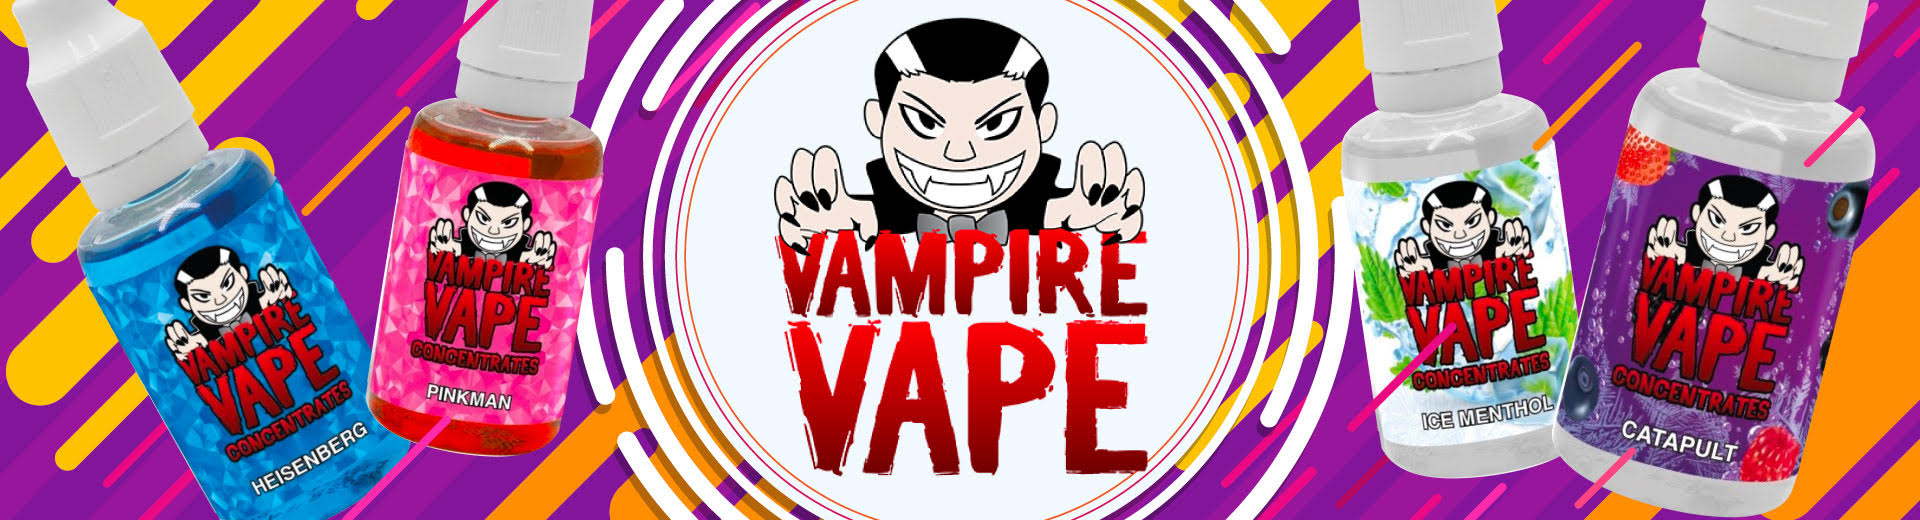 Vampire Vape 1